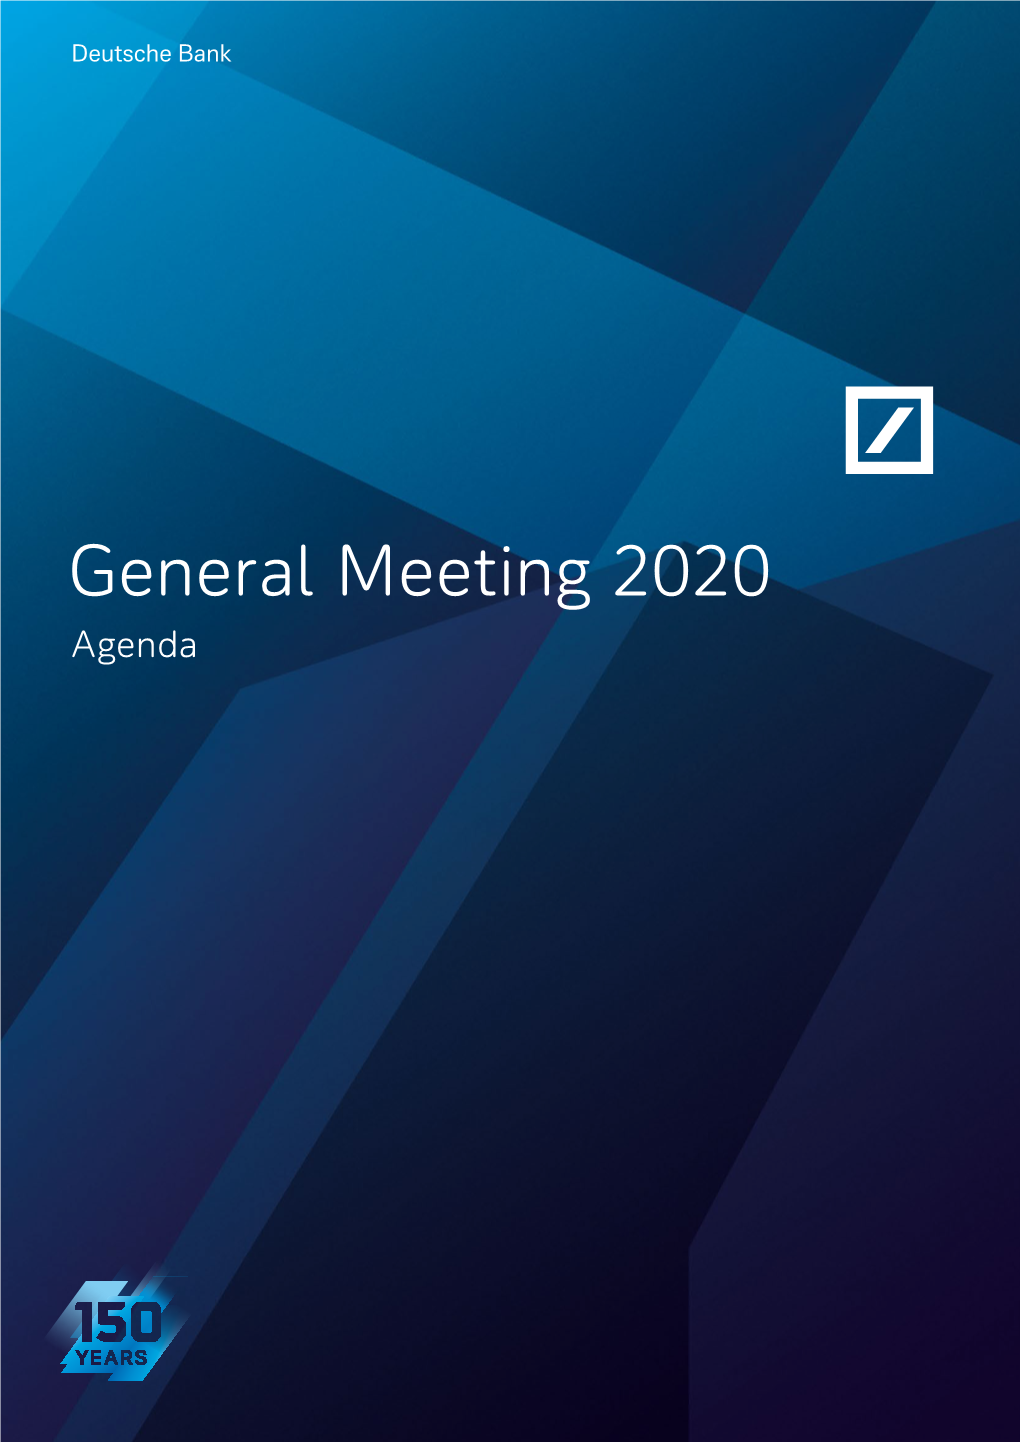 General Meeting 2020 Agenda Deutsche Bank Agenda General Meeting 2020